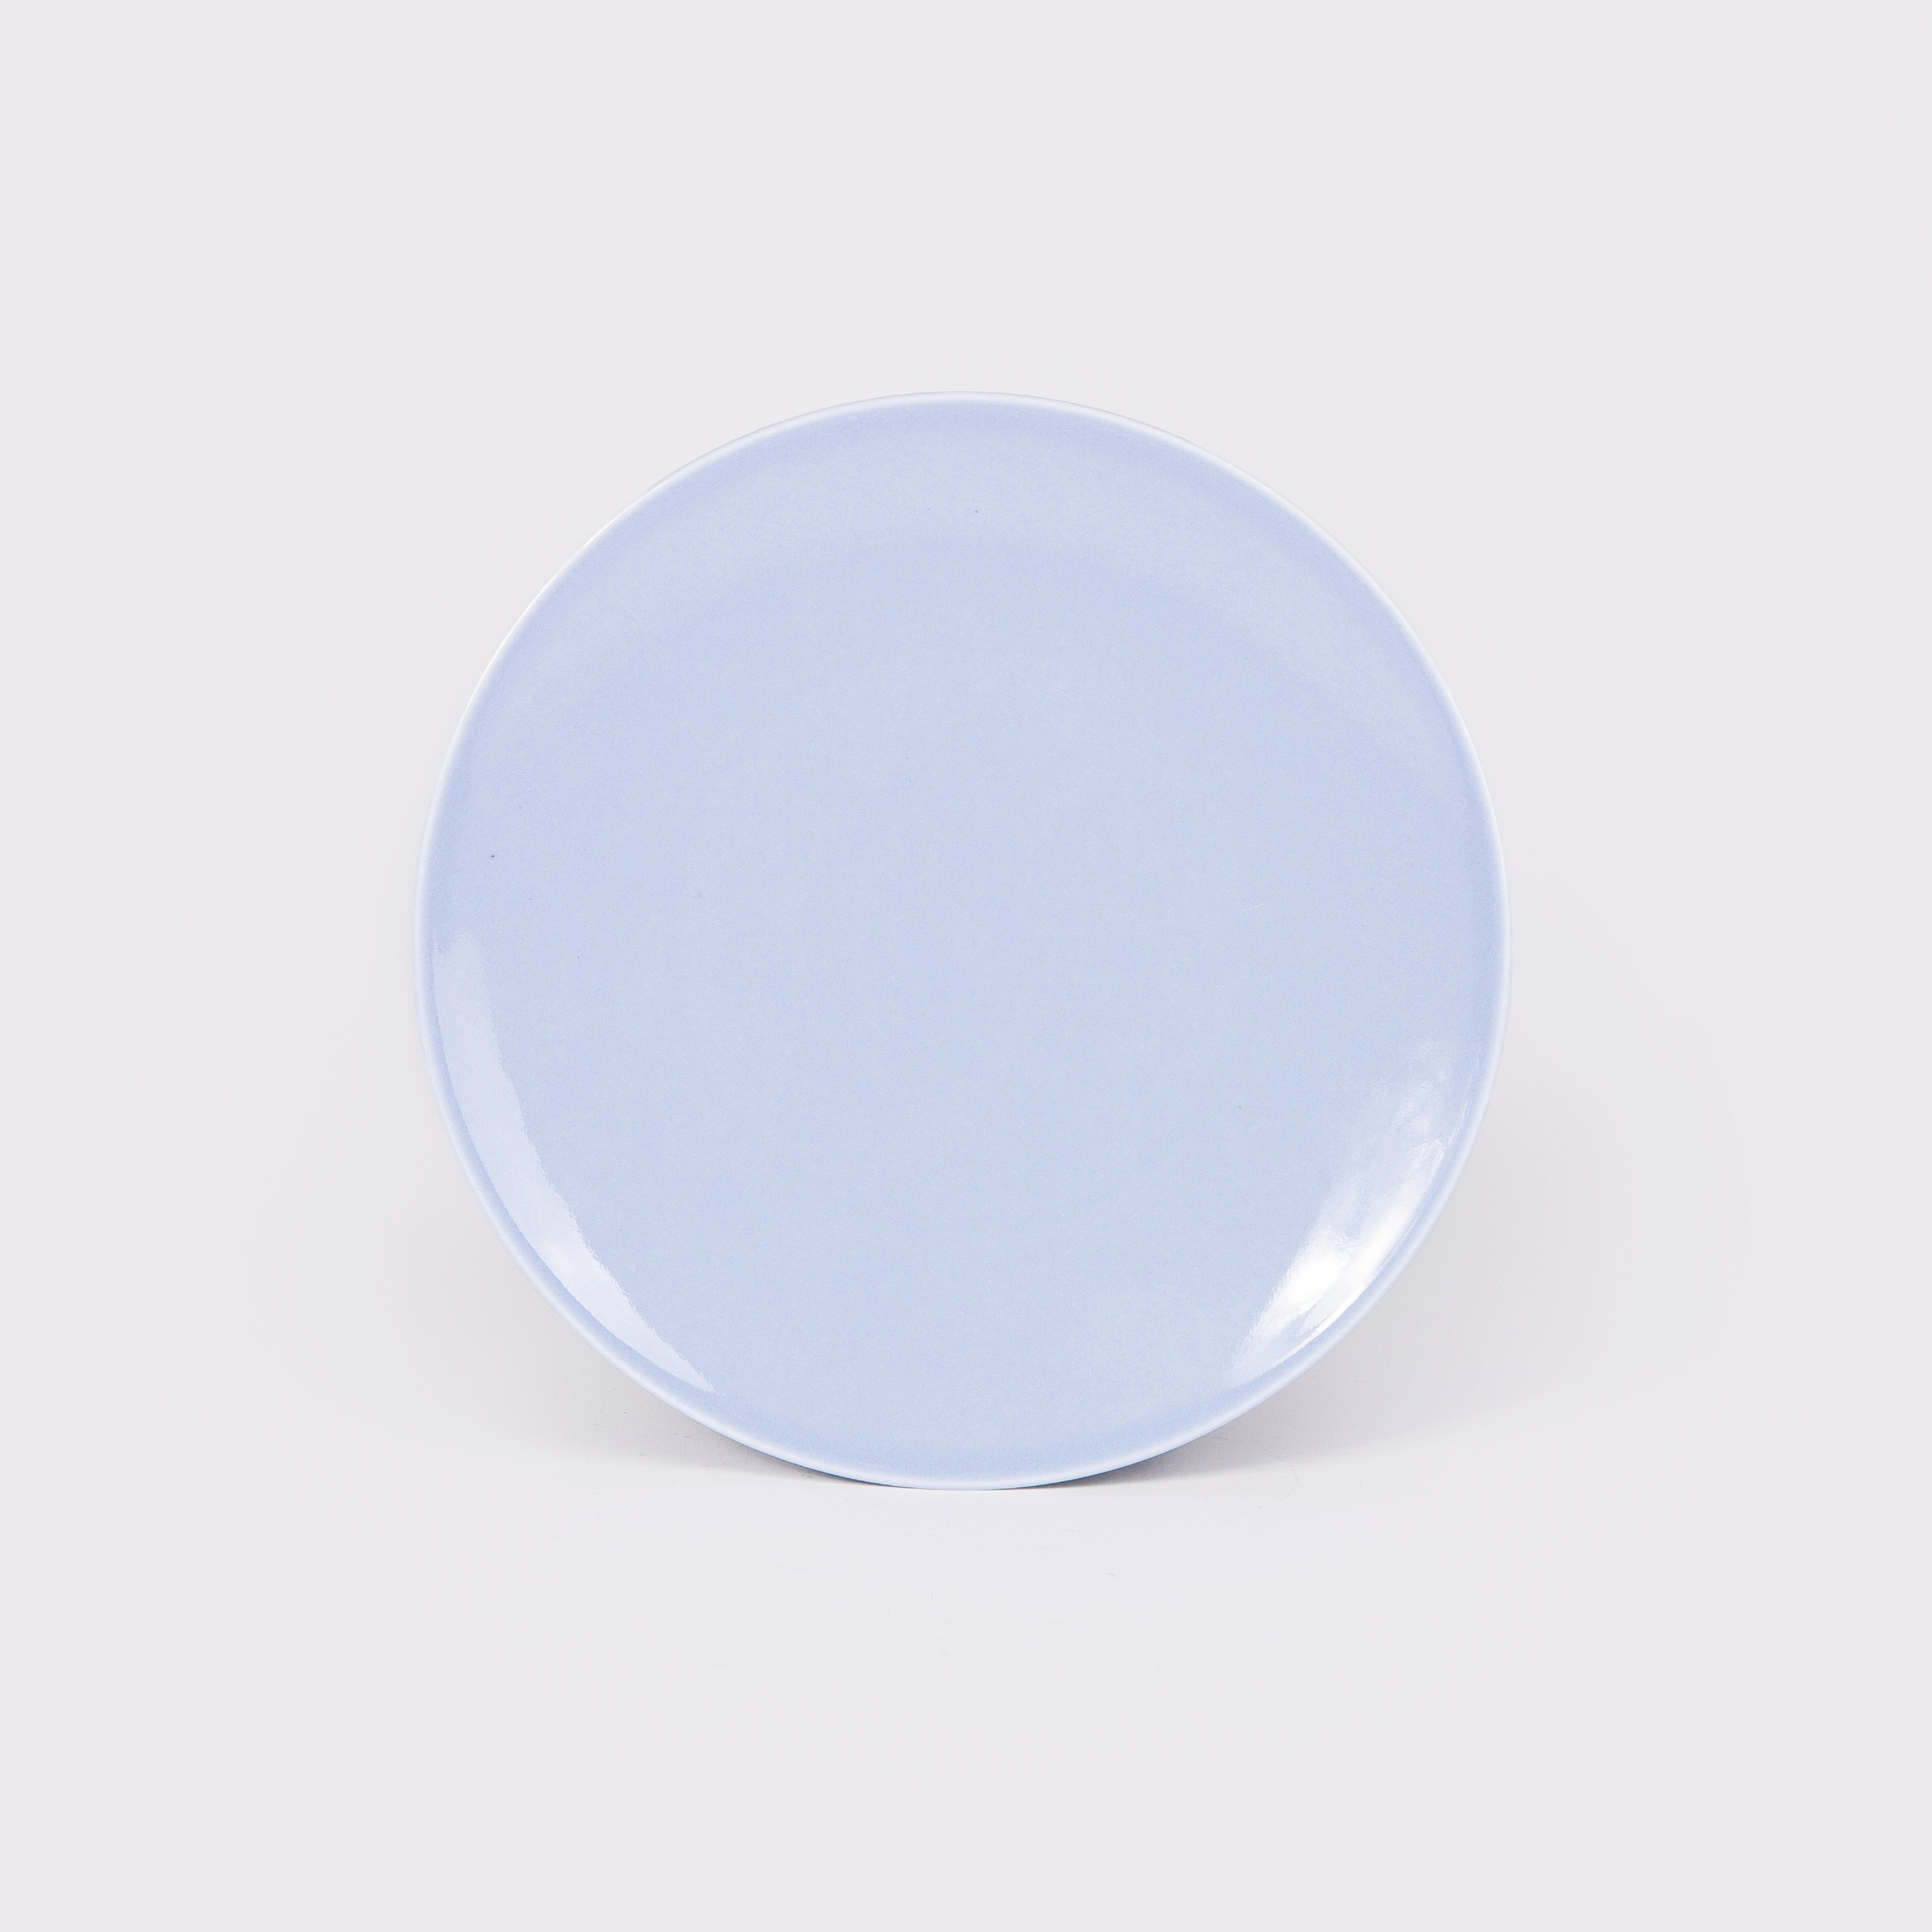 La petite assiette en porcelaine - Bleu pastel - Essentielle